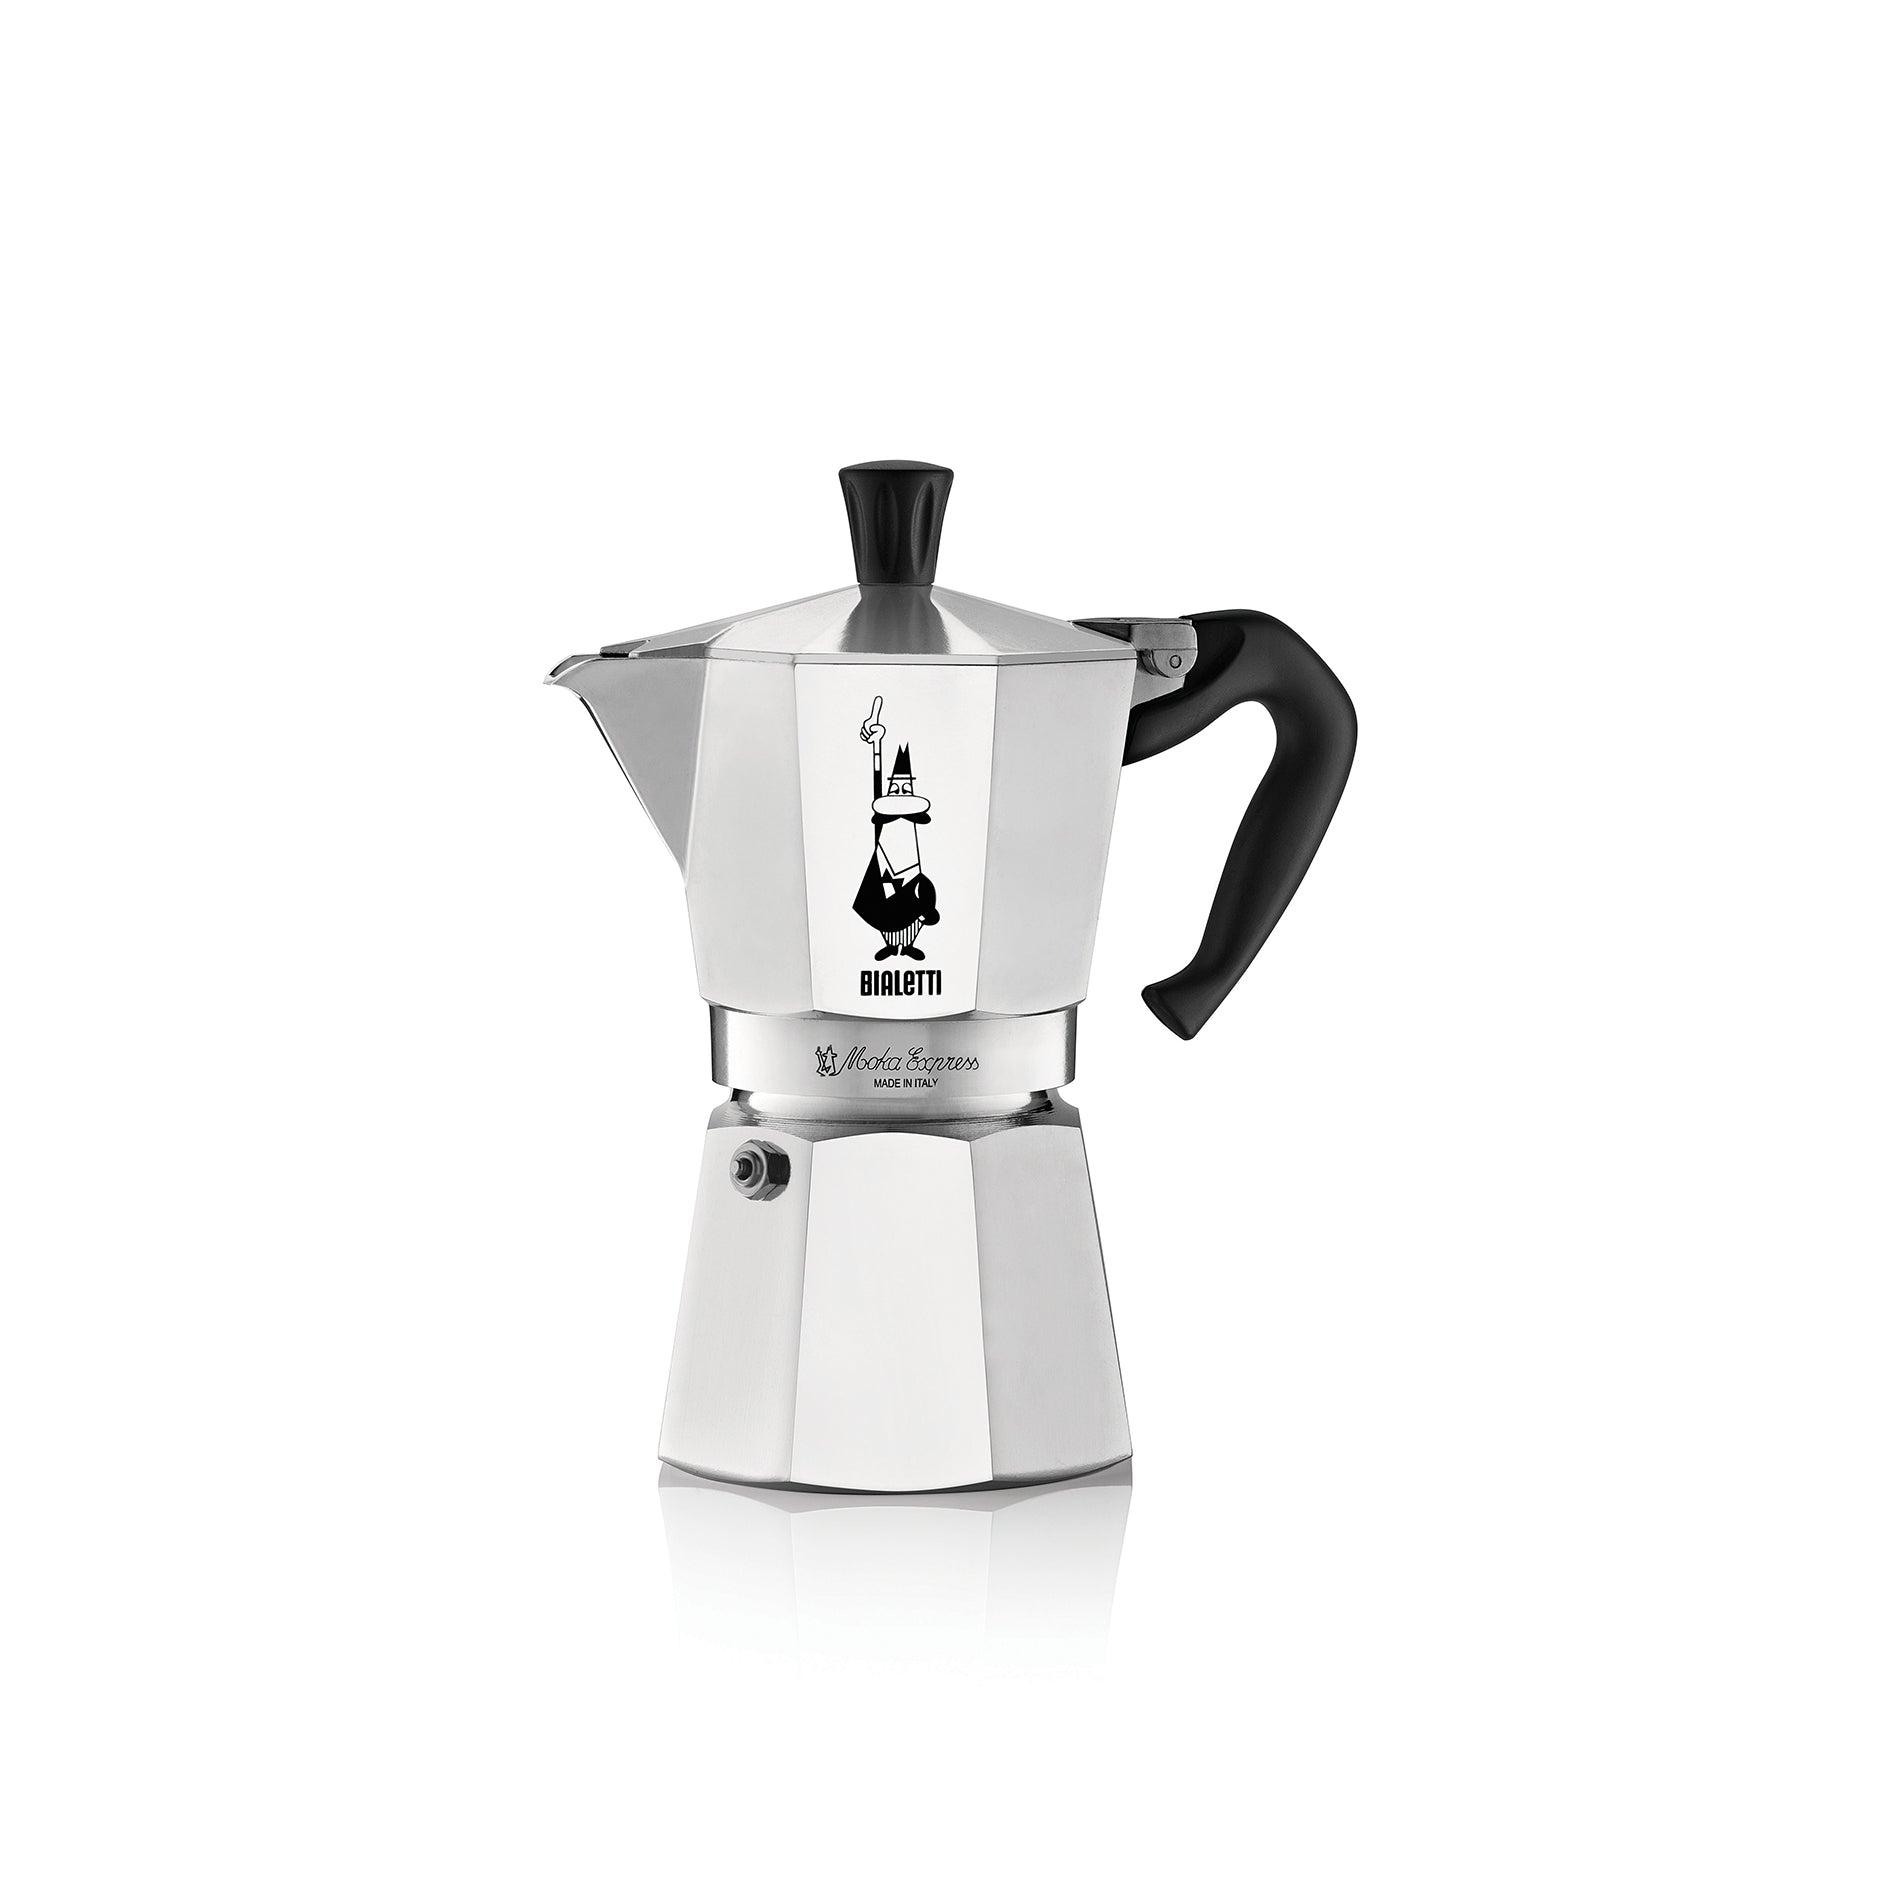 Espressokocher Moka Express Kaffeekanne Bialetti